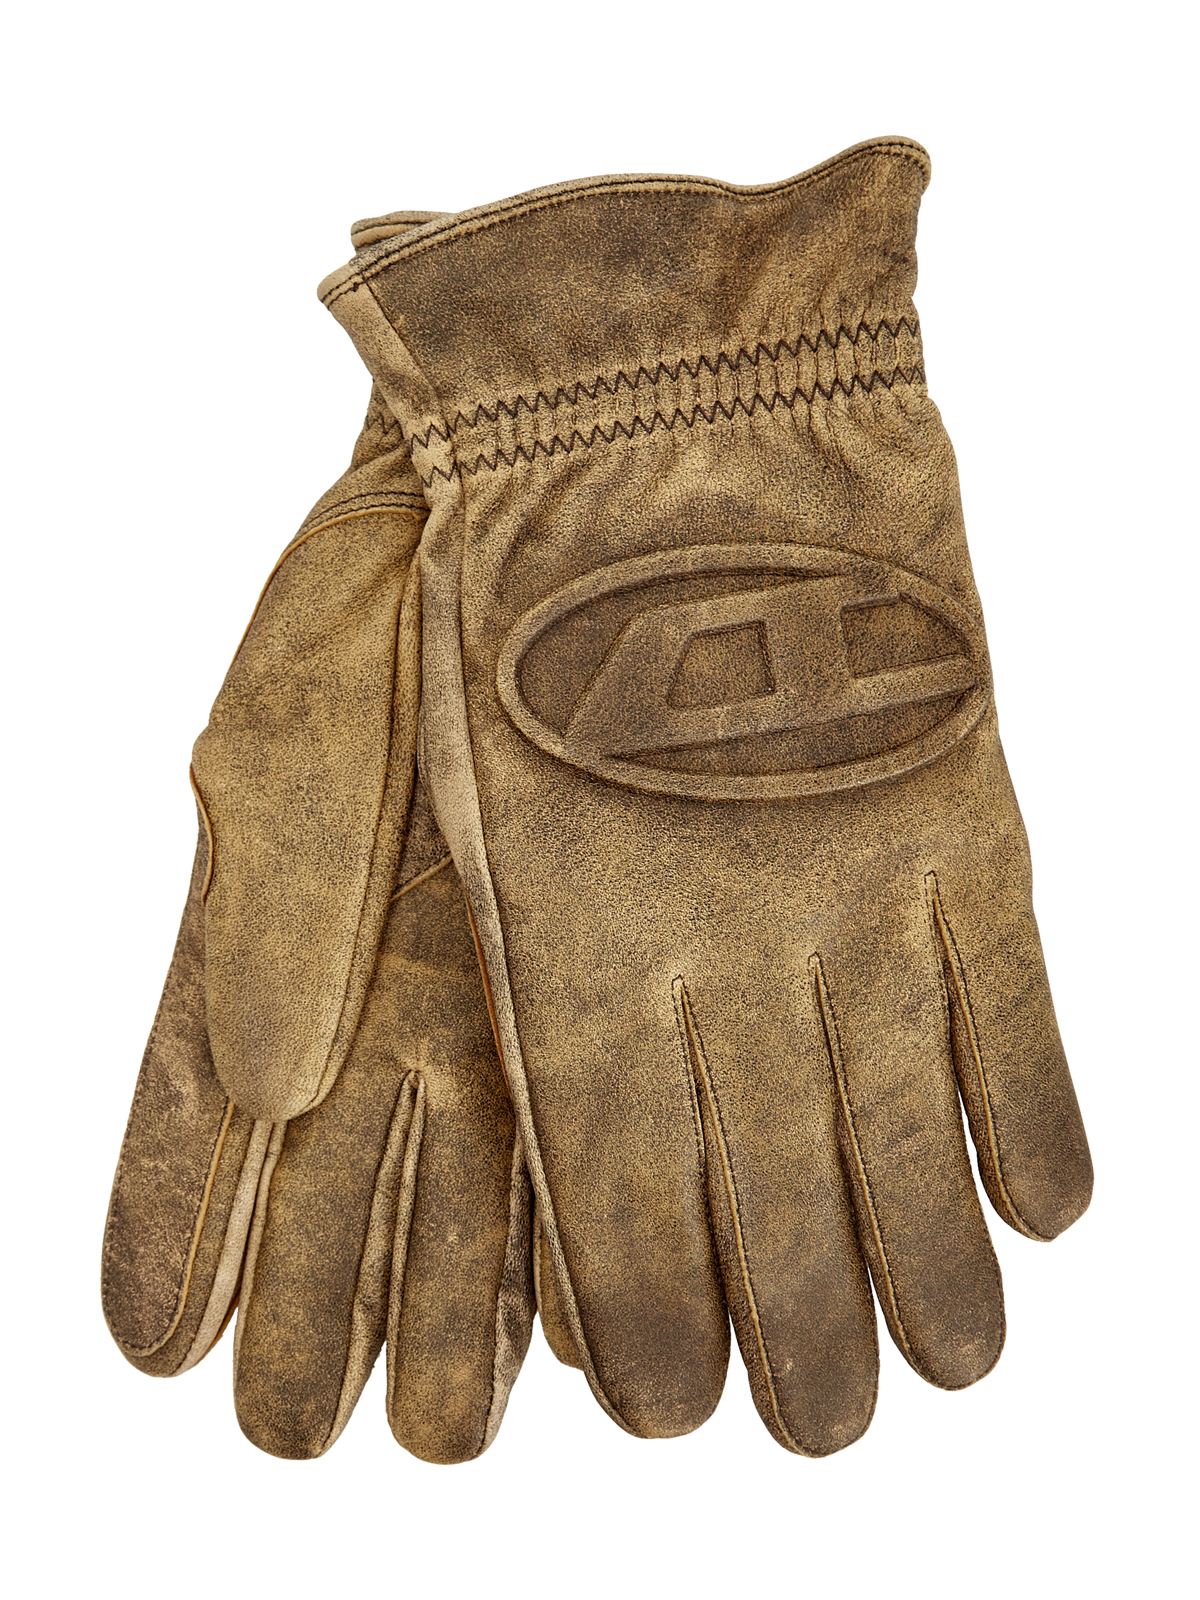 Кожаные перчатки G-Alb с подкладкой из шерсти и логотипом DIESEL, цвет коричневый, размер M